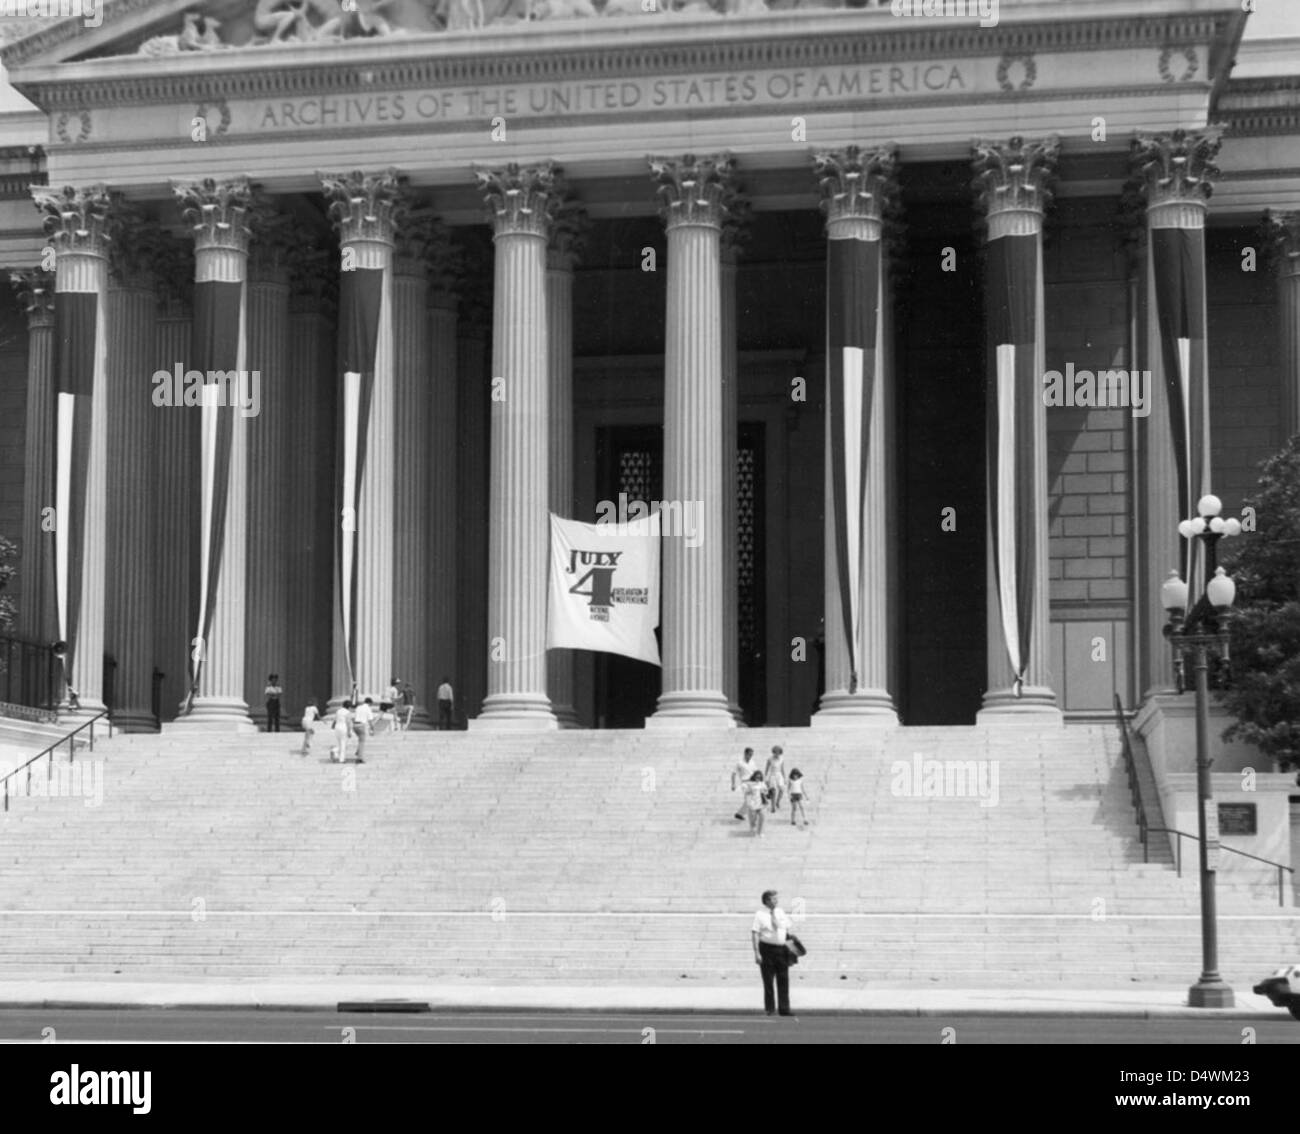 Fotografia del 4 luglio cerimonie presso gli archivi nazionali, 1973 Foto Stock